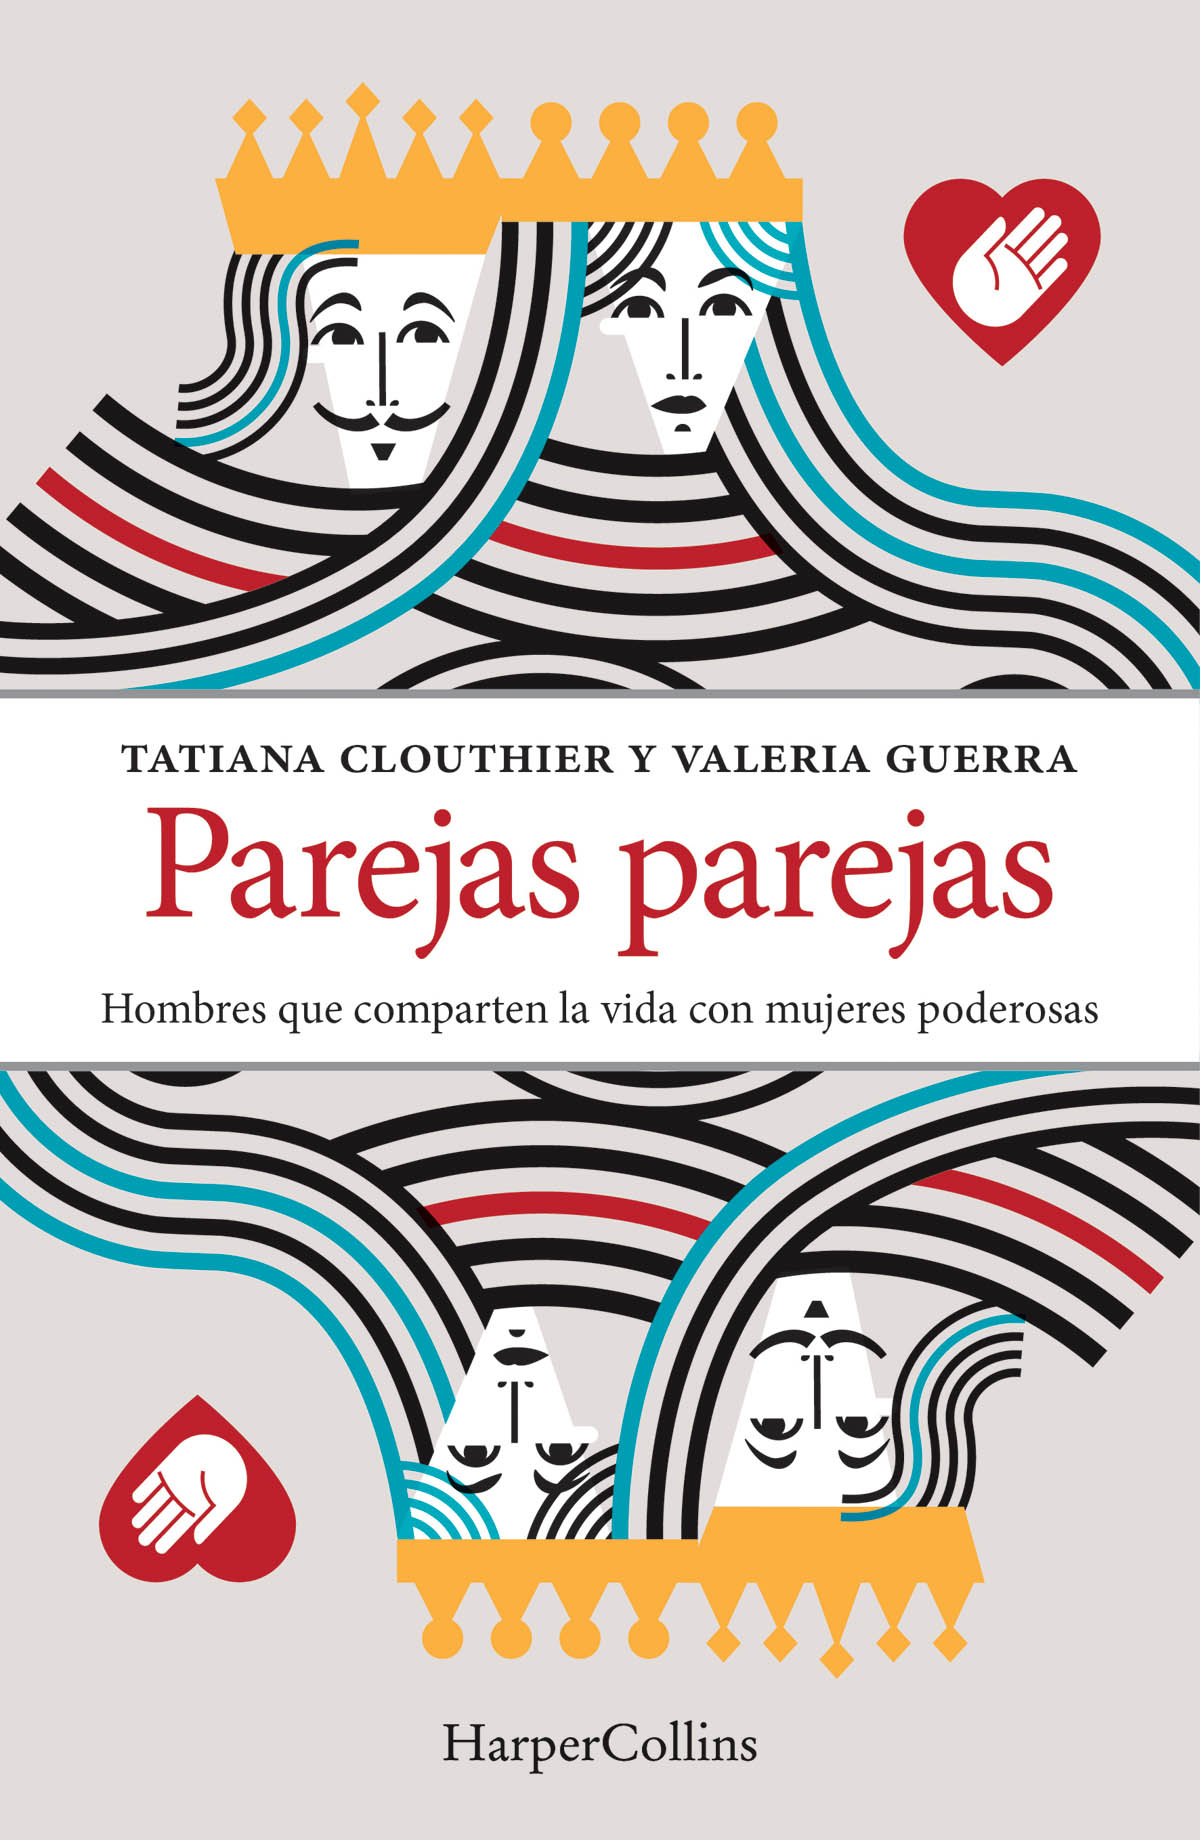 2019 HarperCollins México SA de CV Publicado por HarperCollins México - photo 1